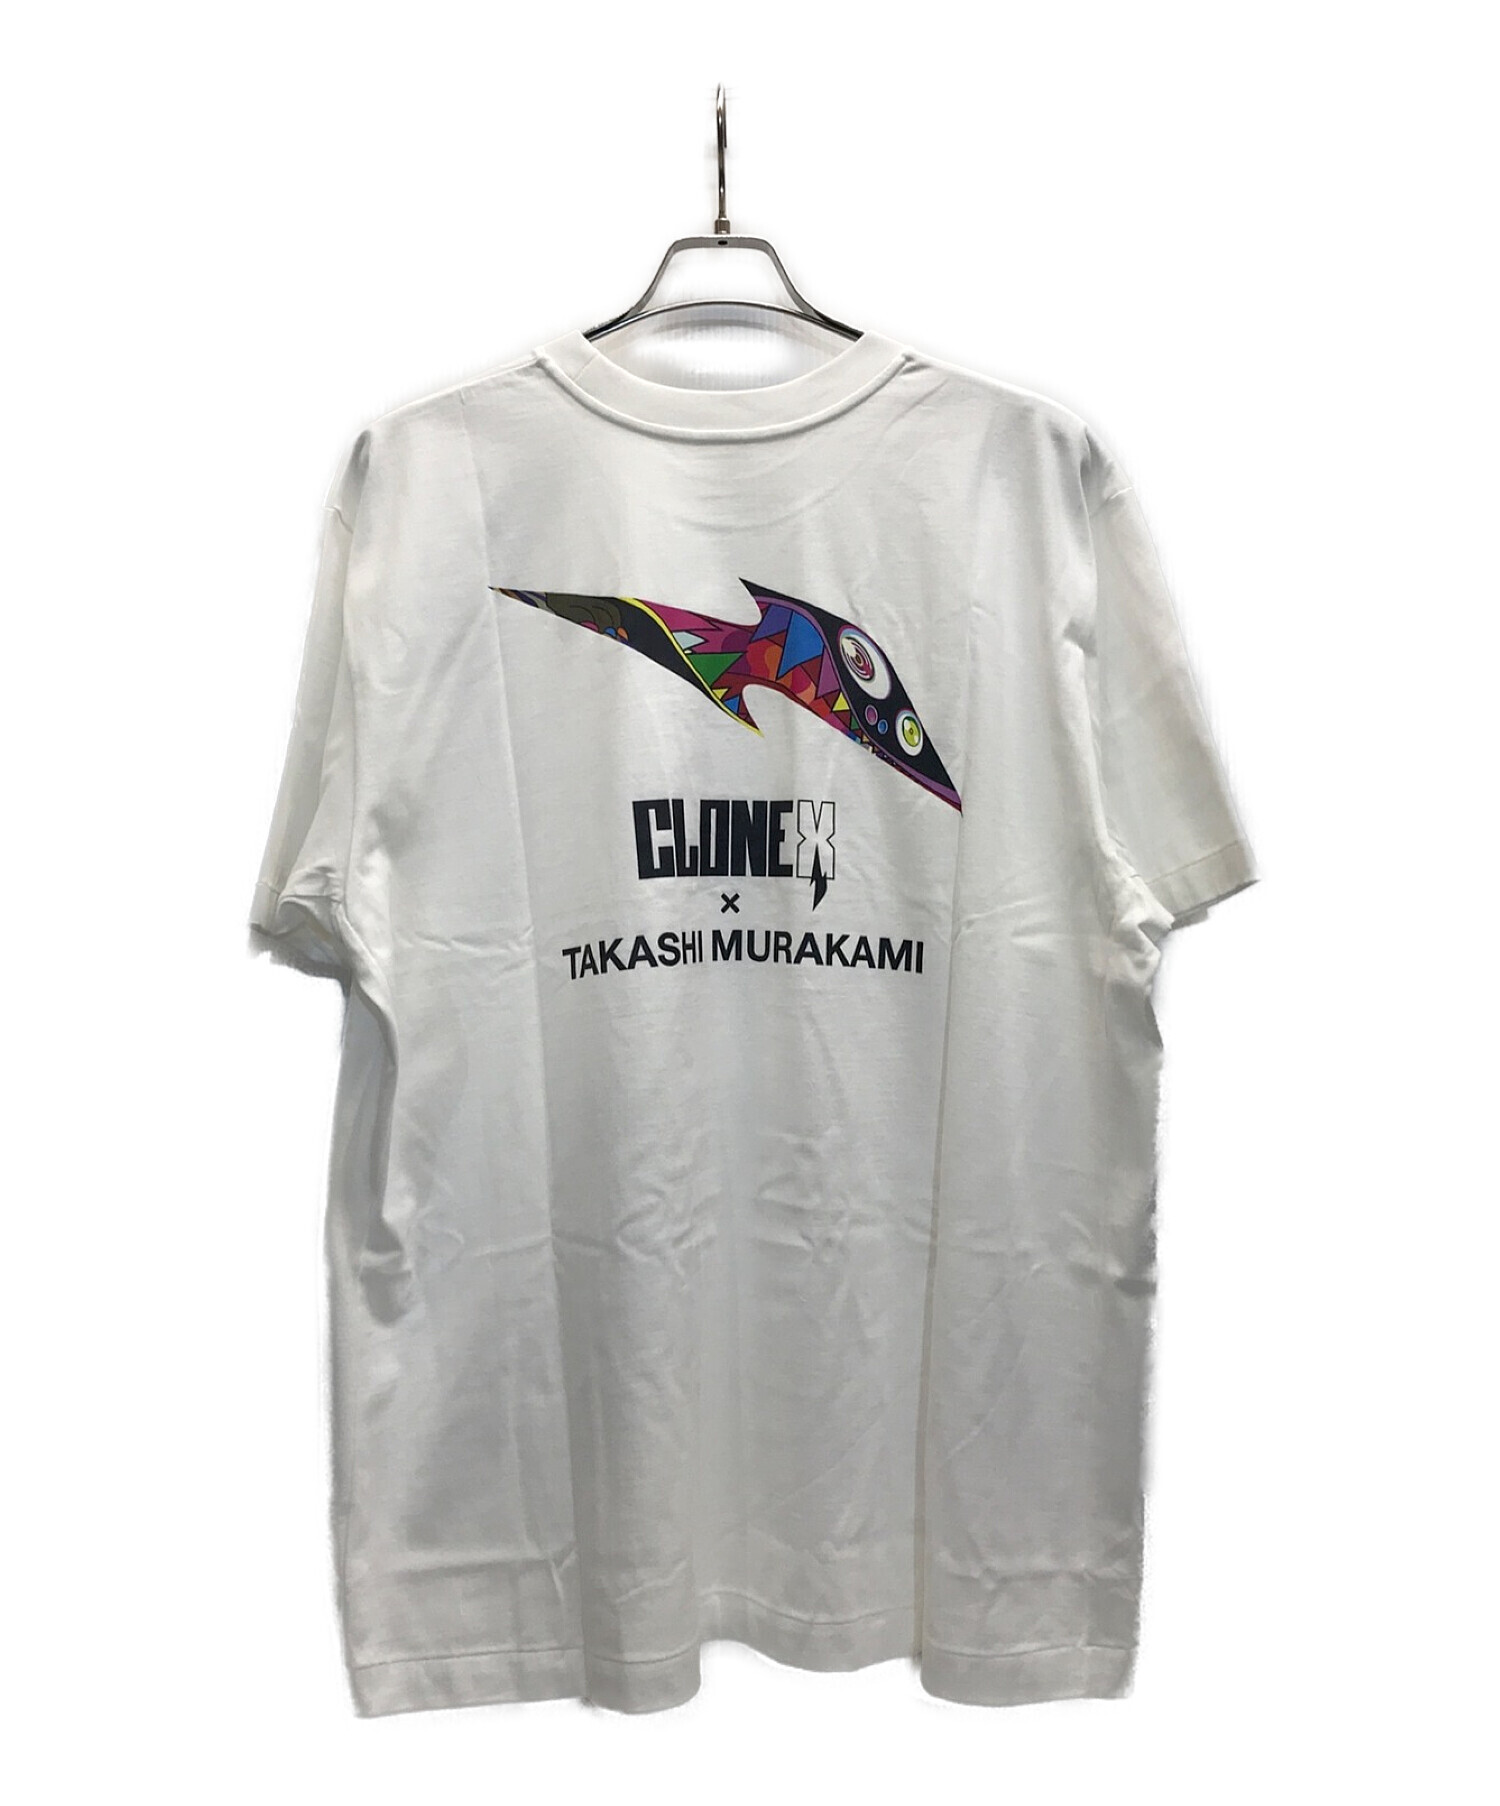 CloneX tシャツ